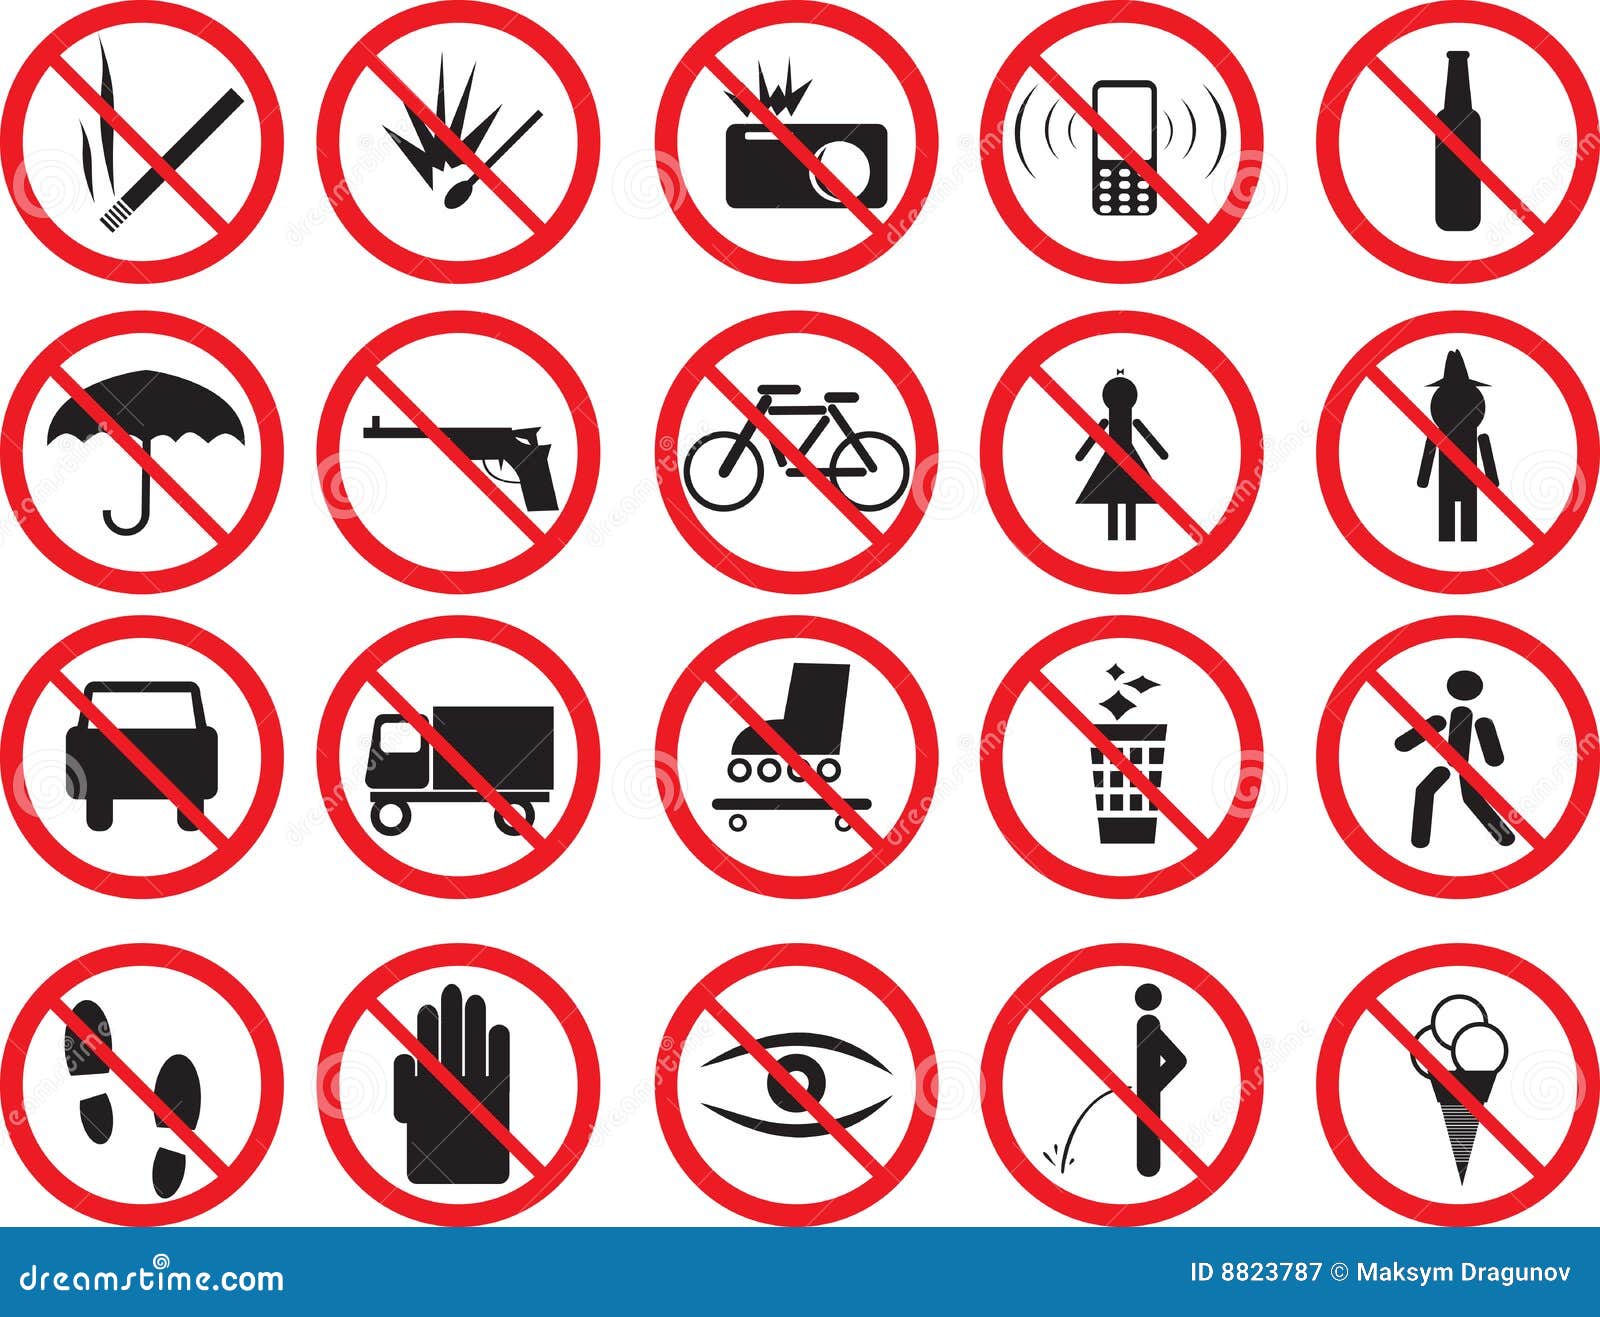 Что можно и нельзя делать в комнате. Знак запрета. Запрещающие знаки в доме. Предупреждающие и запрещающие знаки поведения в обществе. Запрещающие знаки для аттракционов.